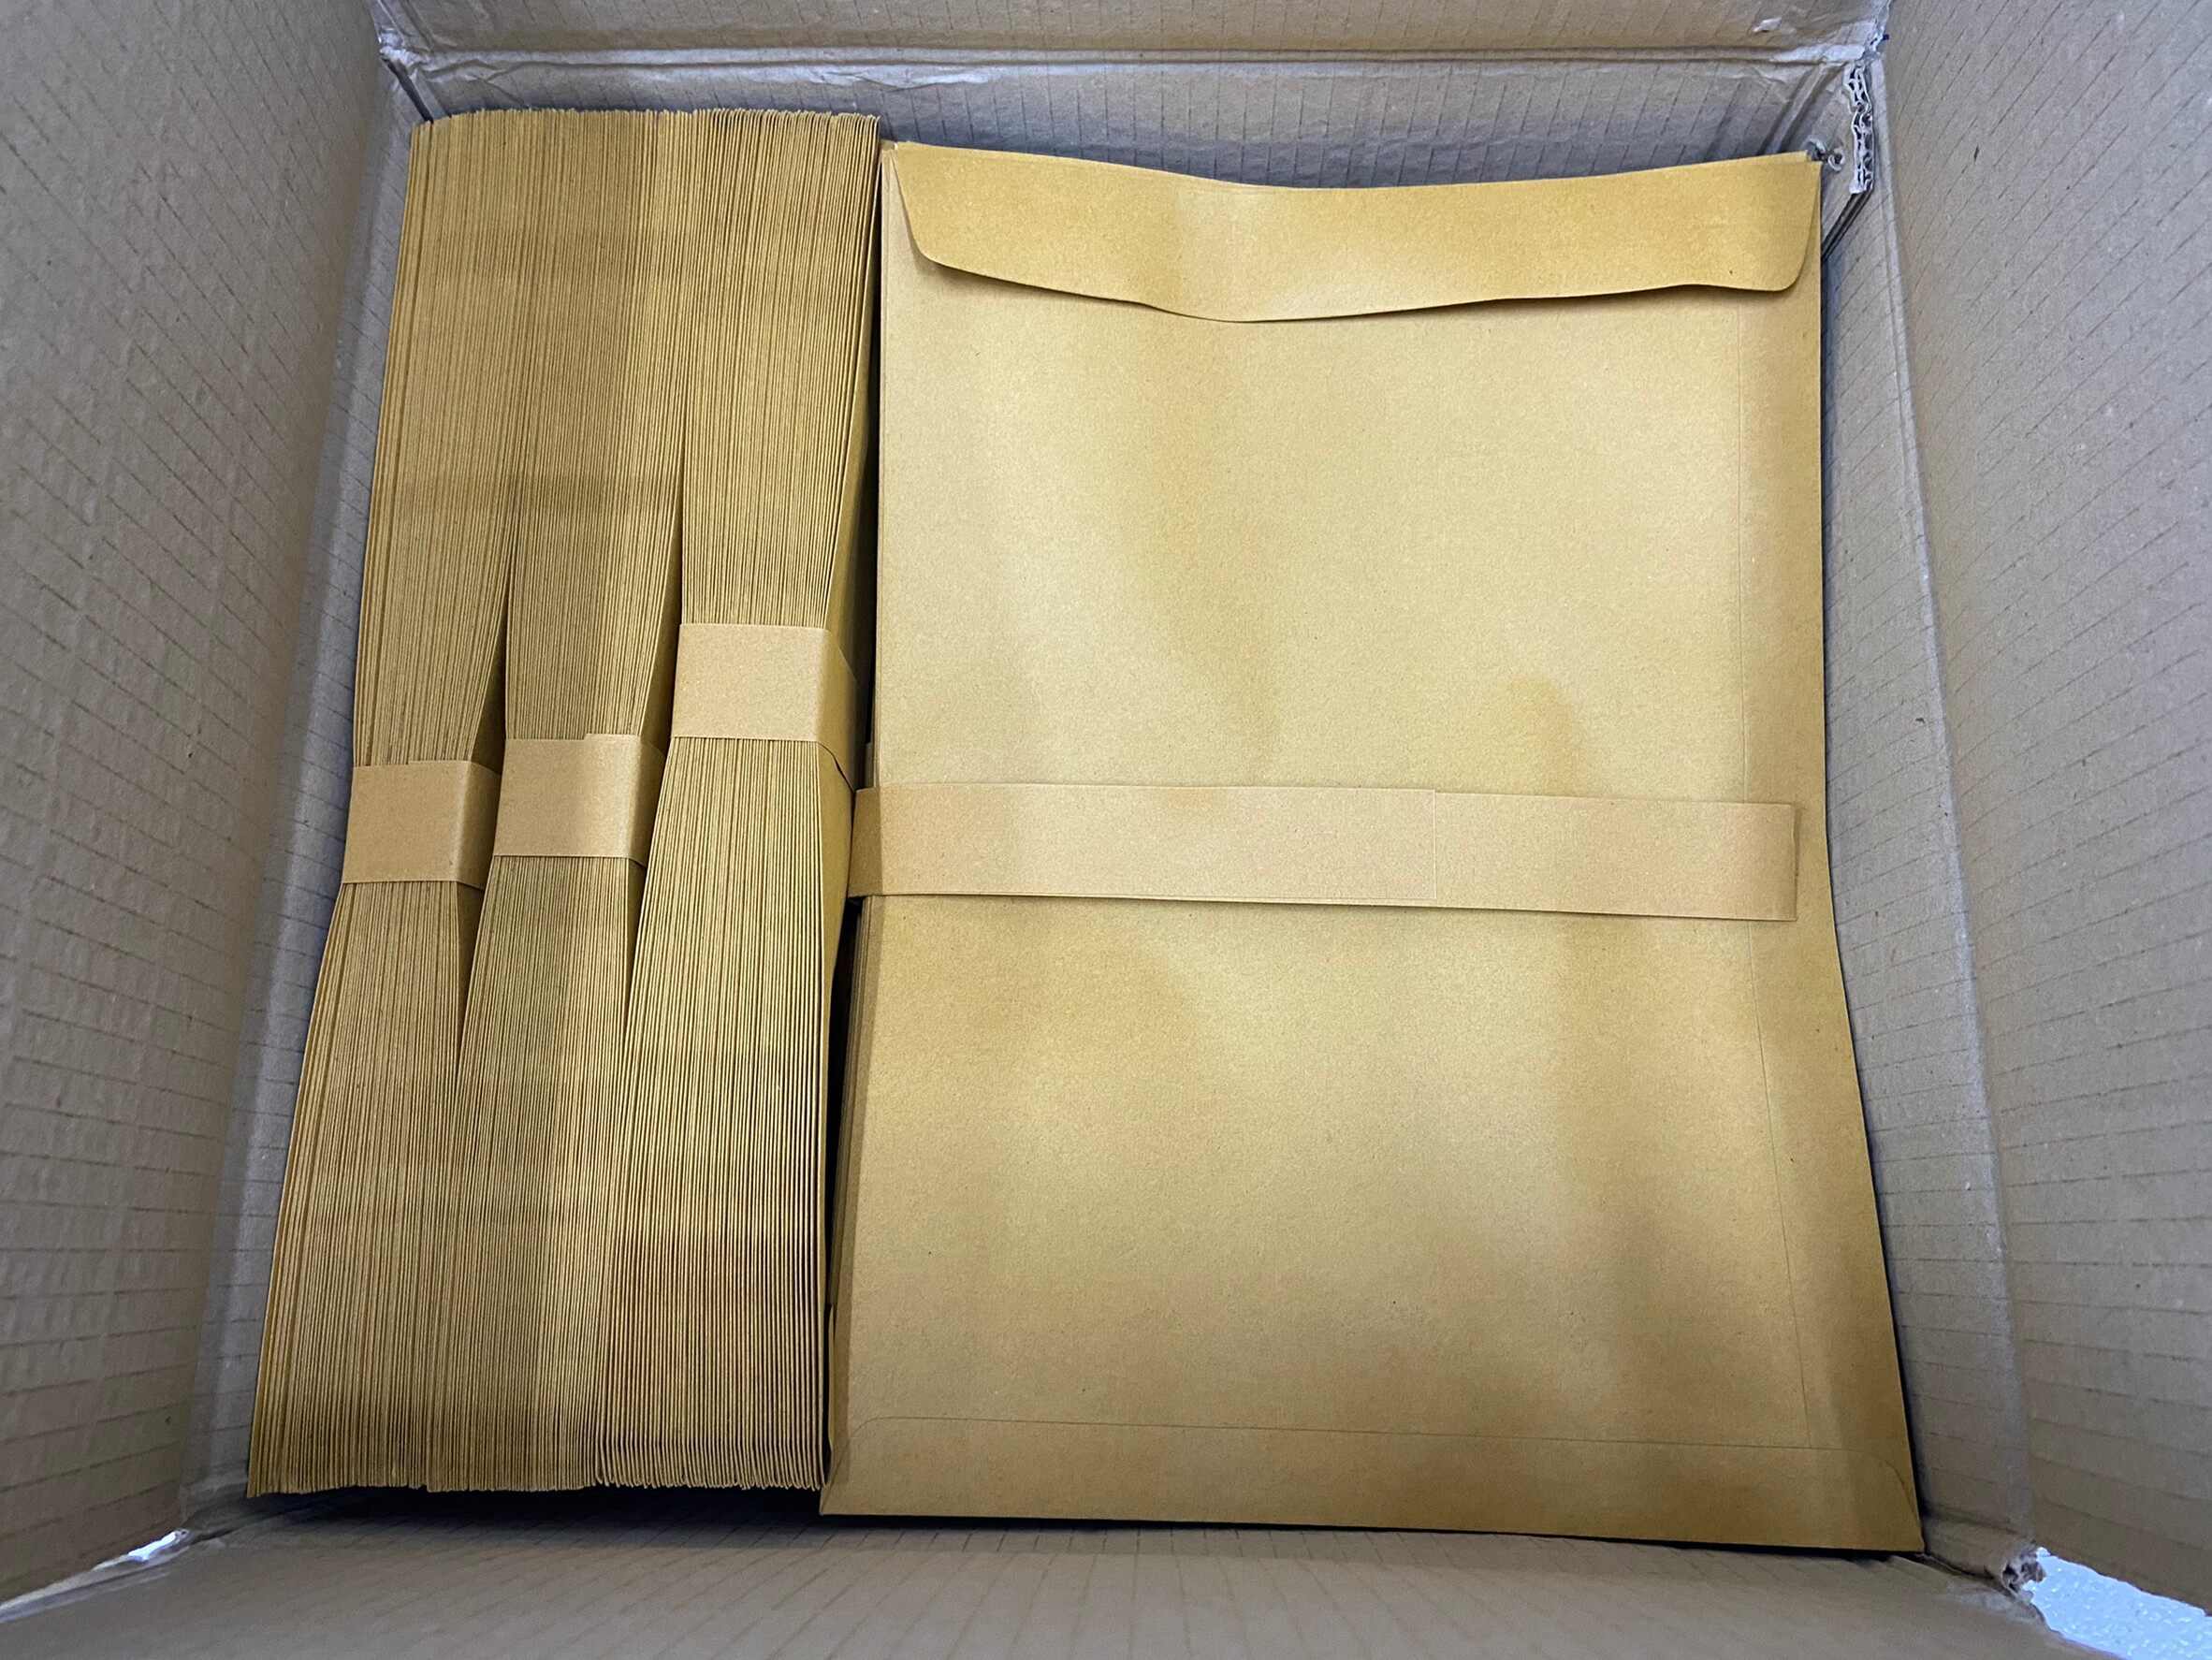 ซองเอกสาร KA 125 แกรม [50 ใบ ถูกสุดในไทย] ค่าส่ง 27บ ซองน้ำตาล ไม่จ่ายหน้า ซองกระดาษ ซองไปรษณีย์ Brown Paper Document Envelopes